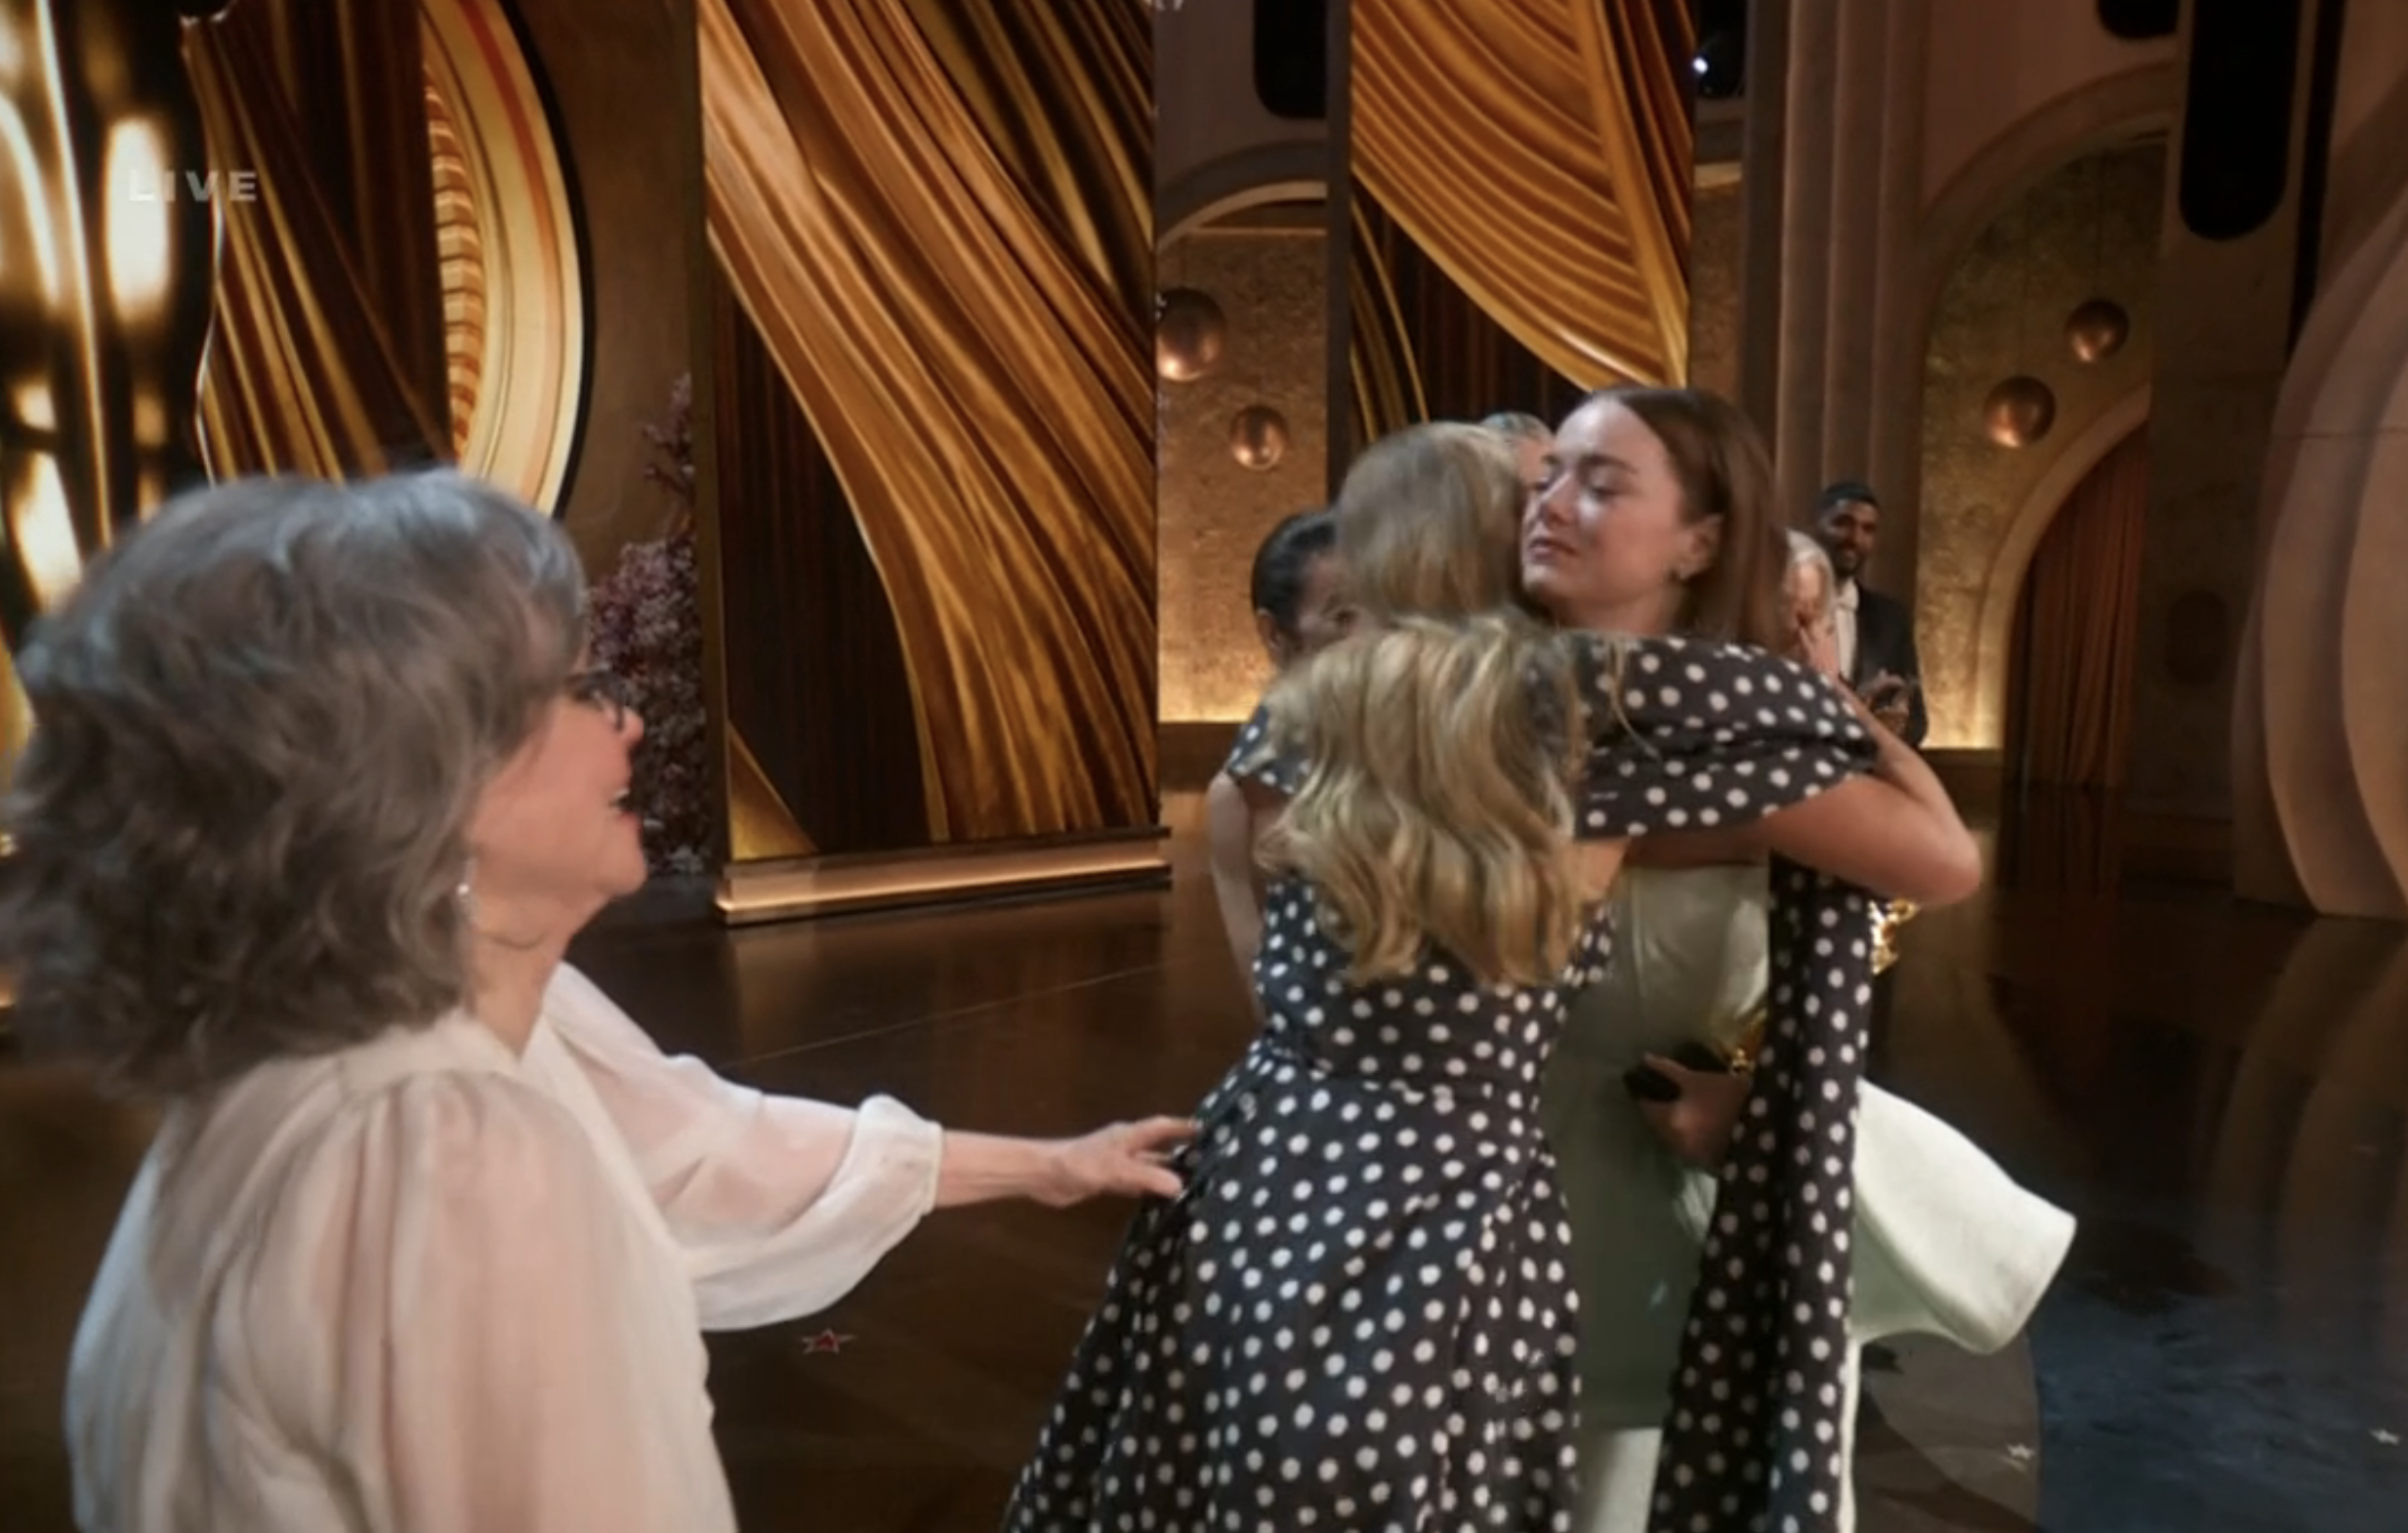 Jennifer and Emma hugging on stage